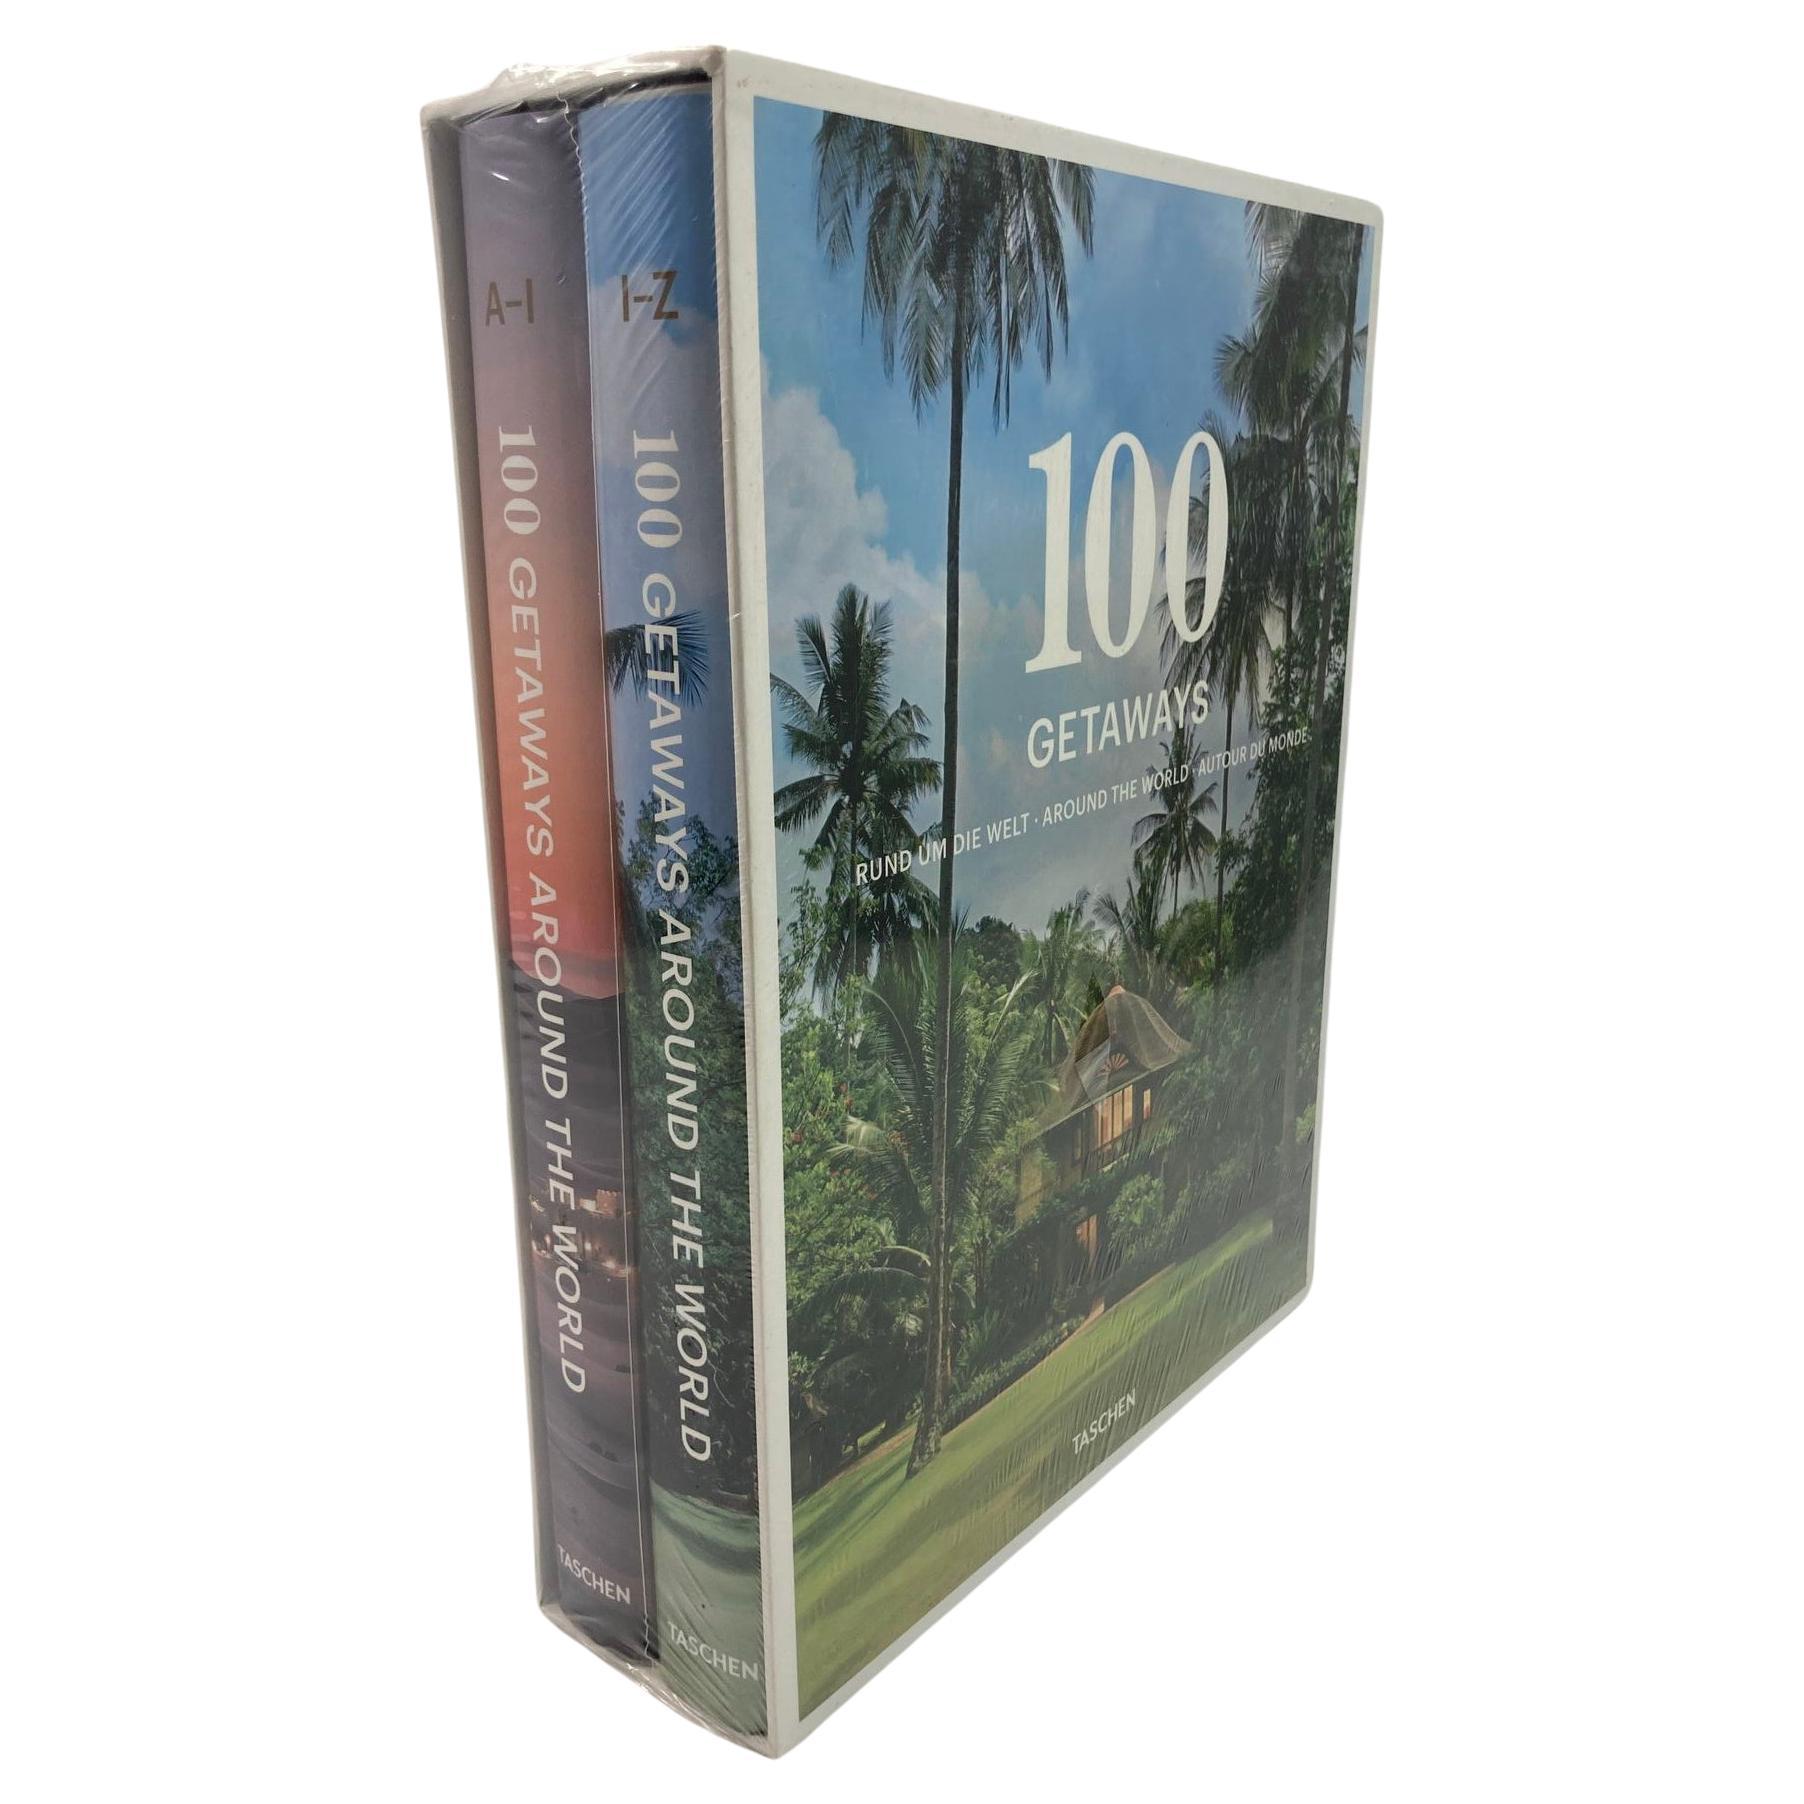 100 Getaways Around the World by Margit J. Mayer TASCHEN Hardcover 2014